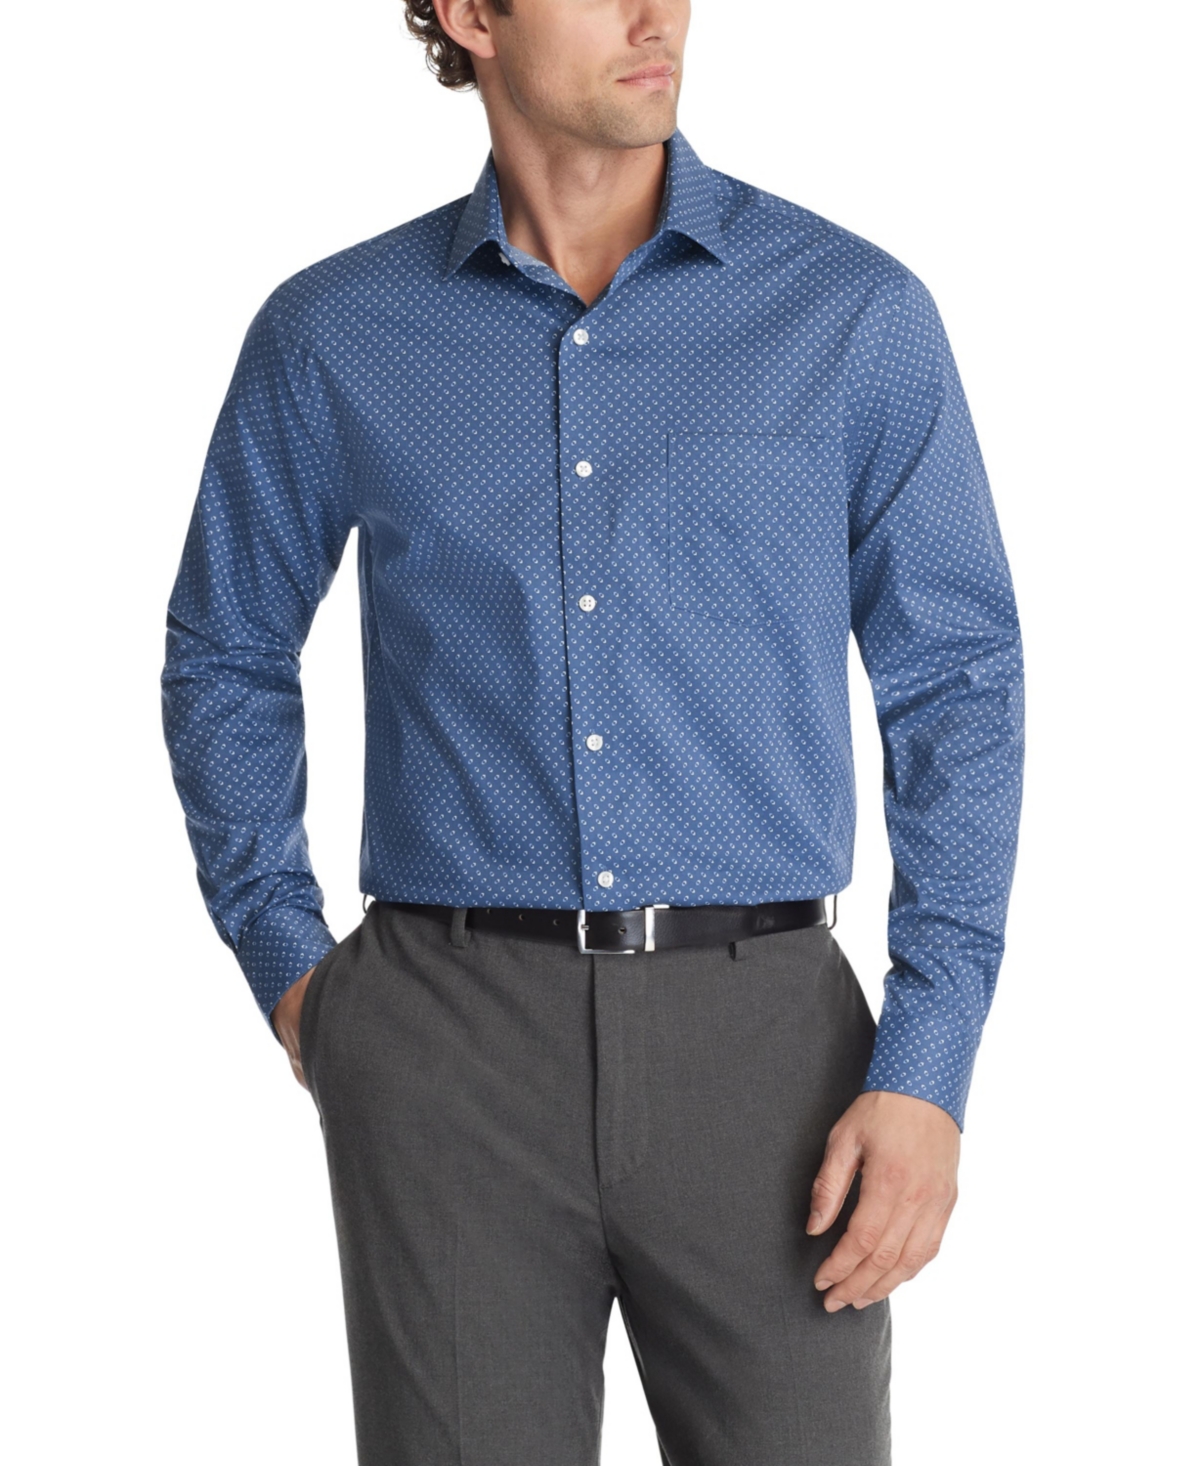 Men's Regular-Fit Wrinkle-Resistant Dress Shirt - Marine Blue